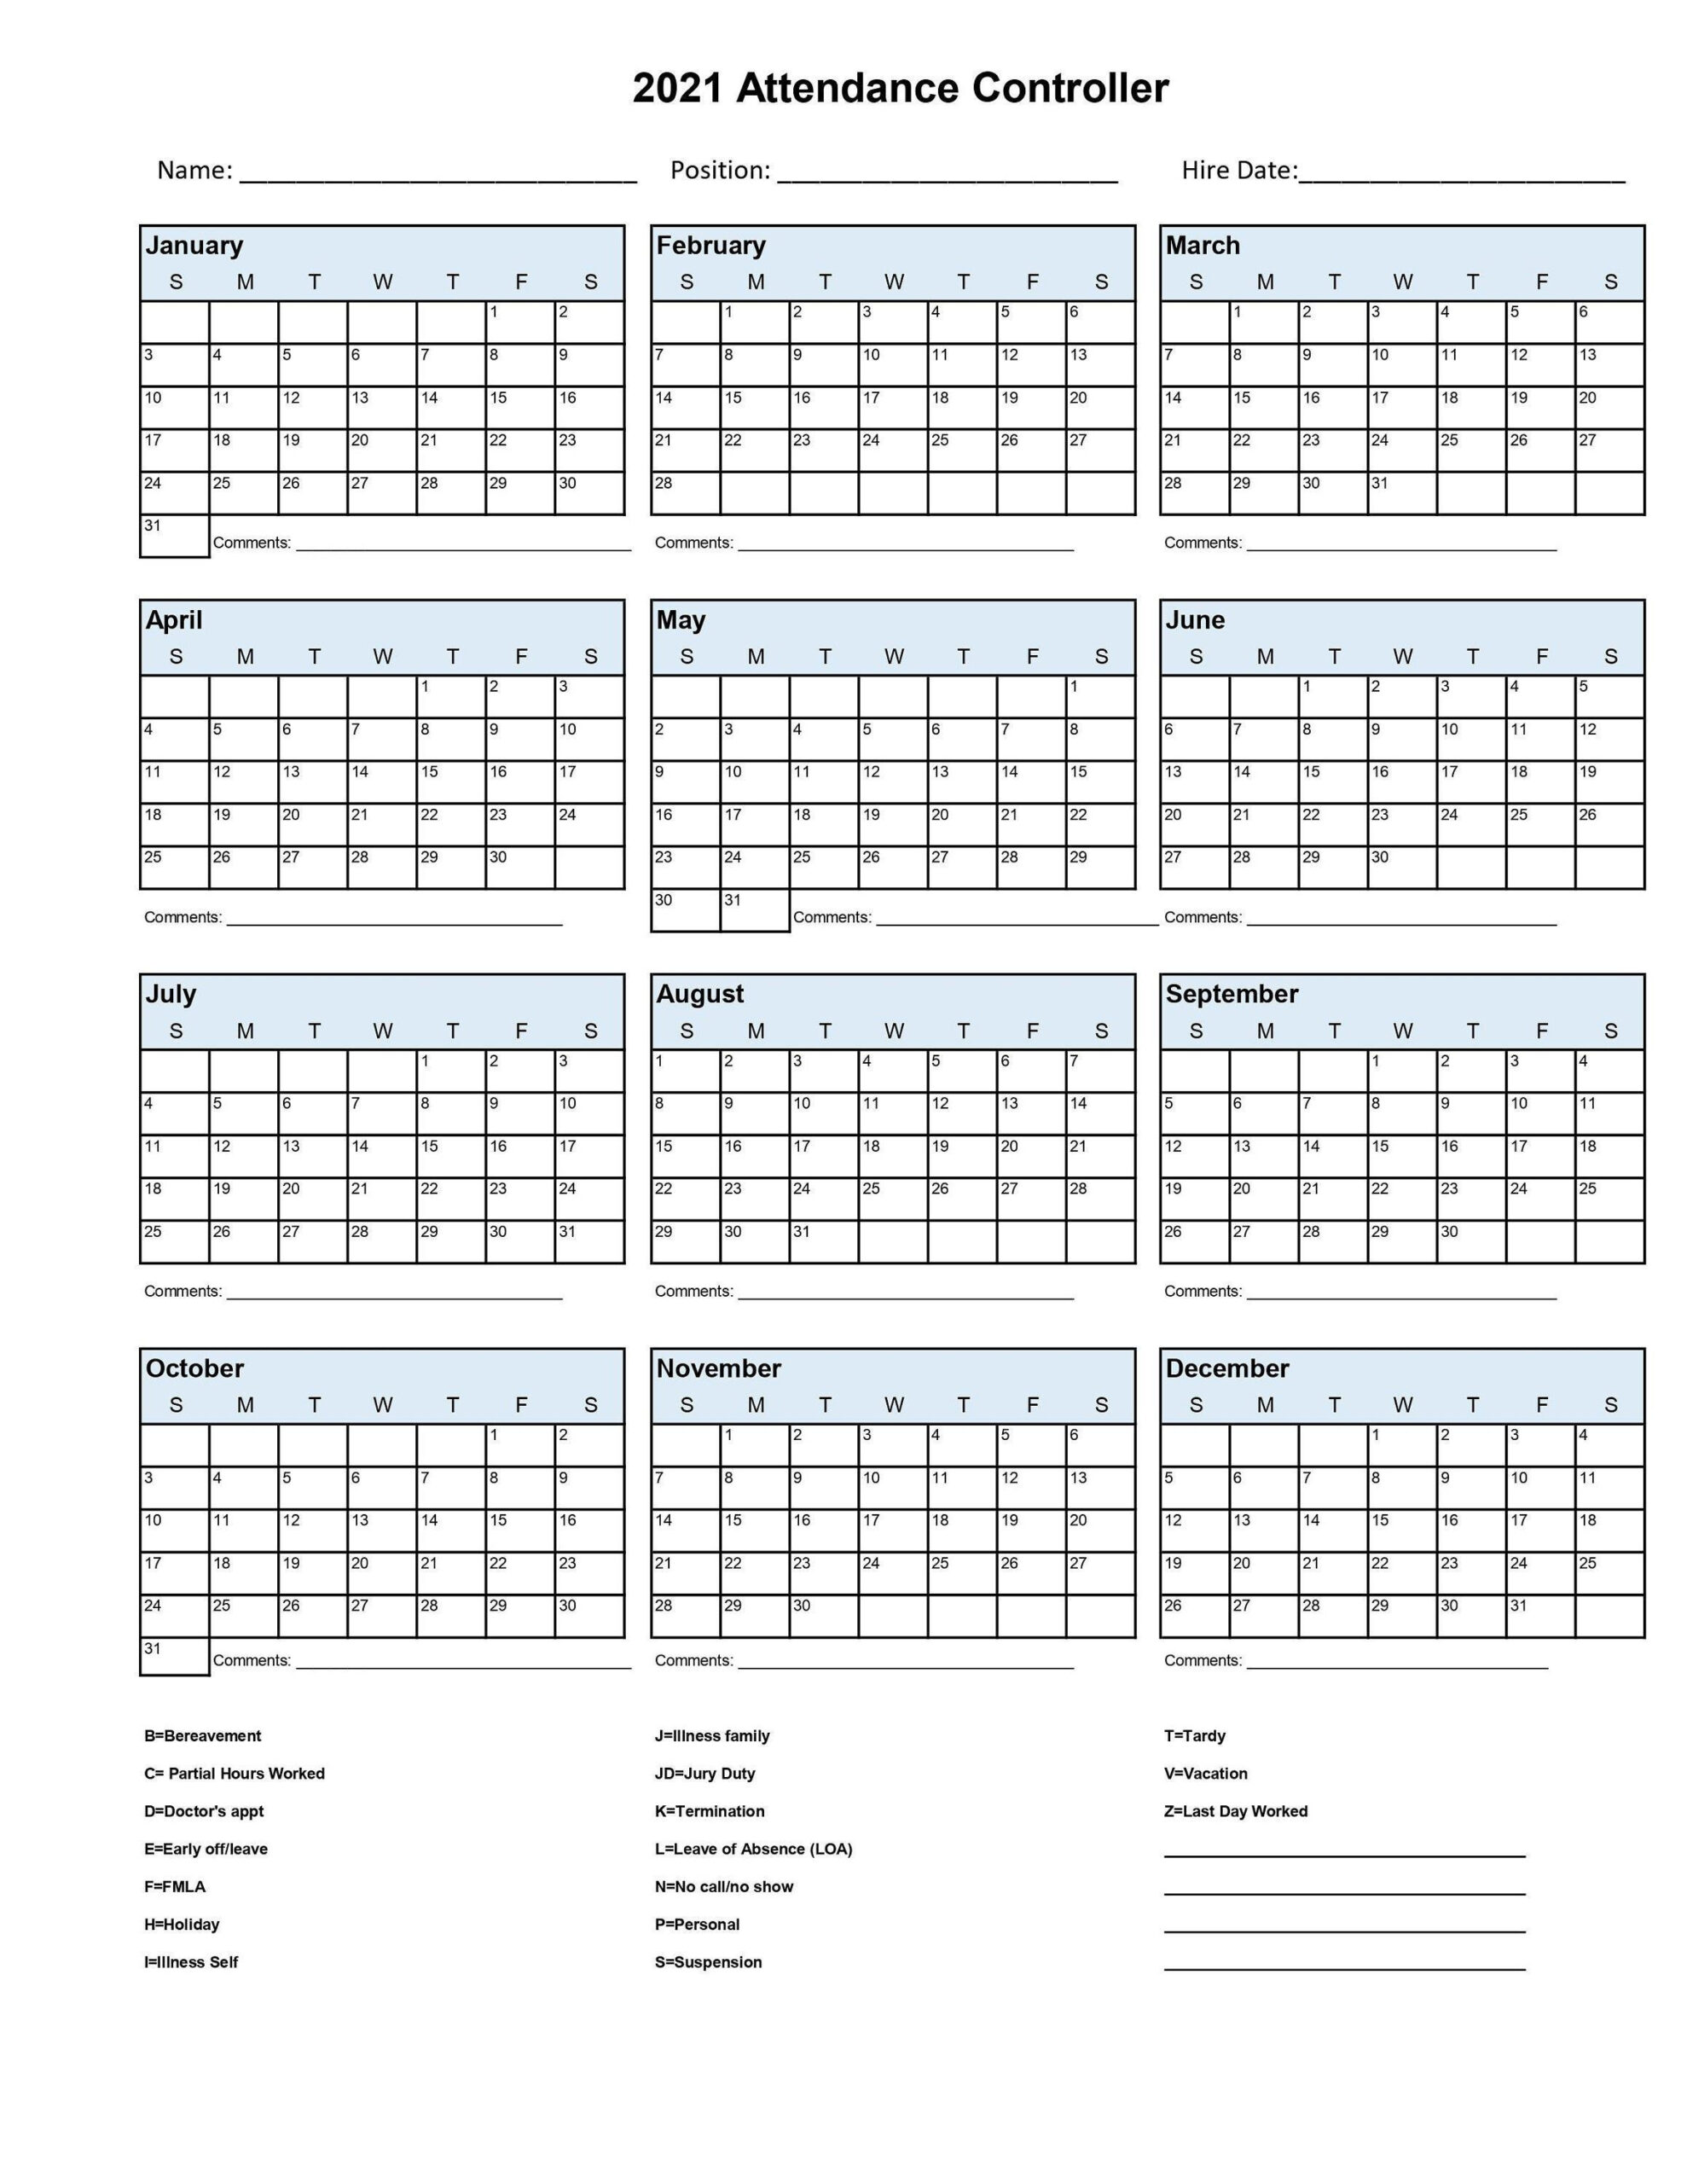 2021 Employee School Attendance Tracker Calendar Employee-2021 Attendance Calendar